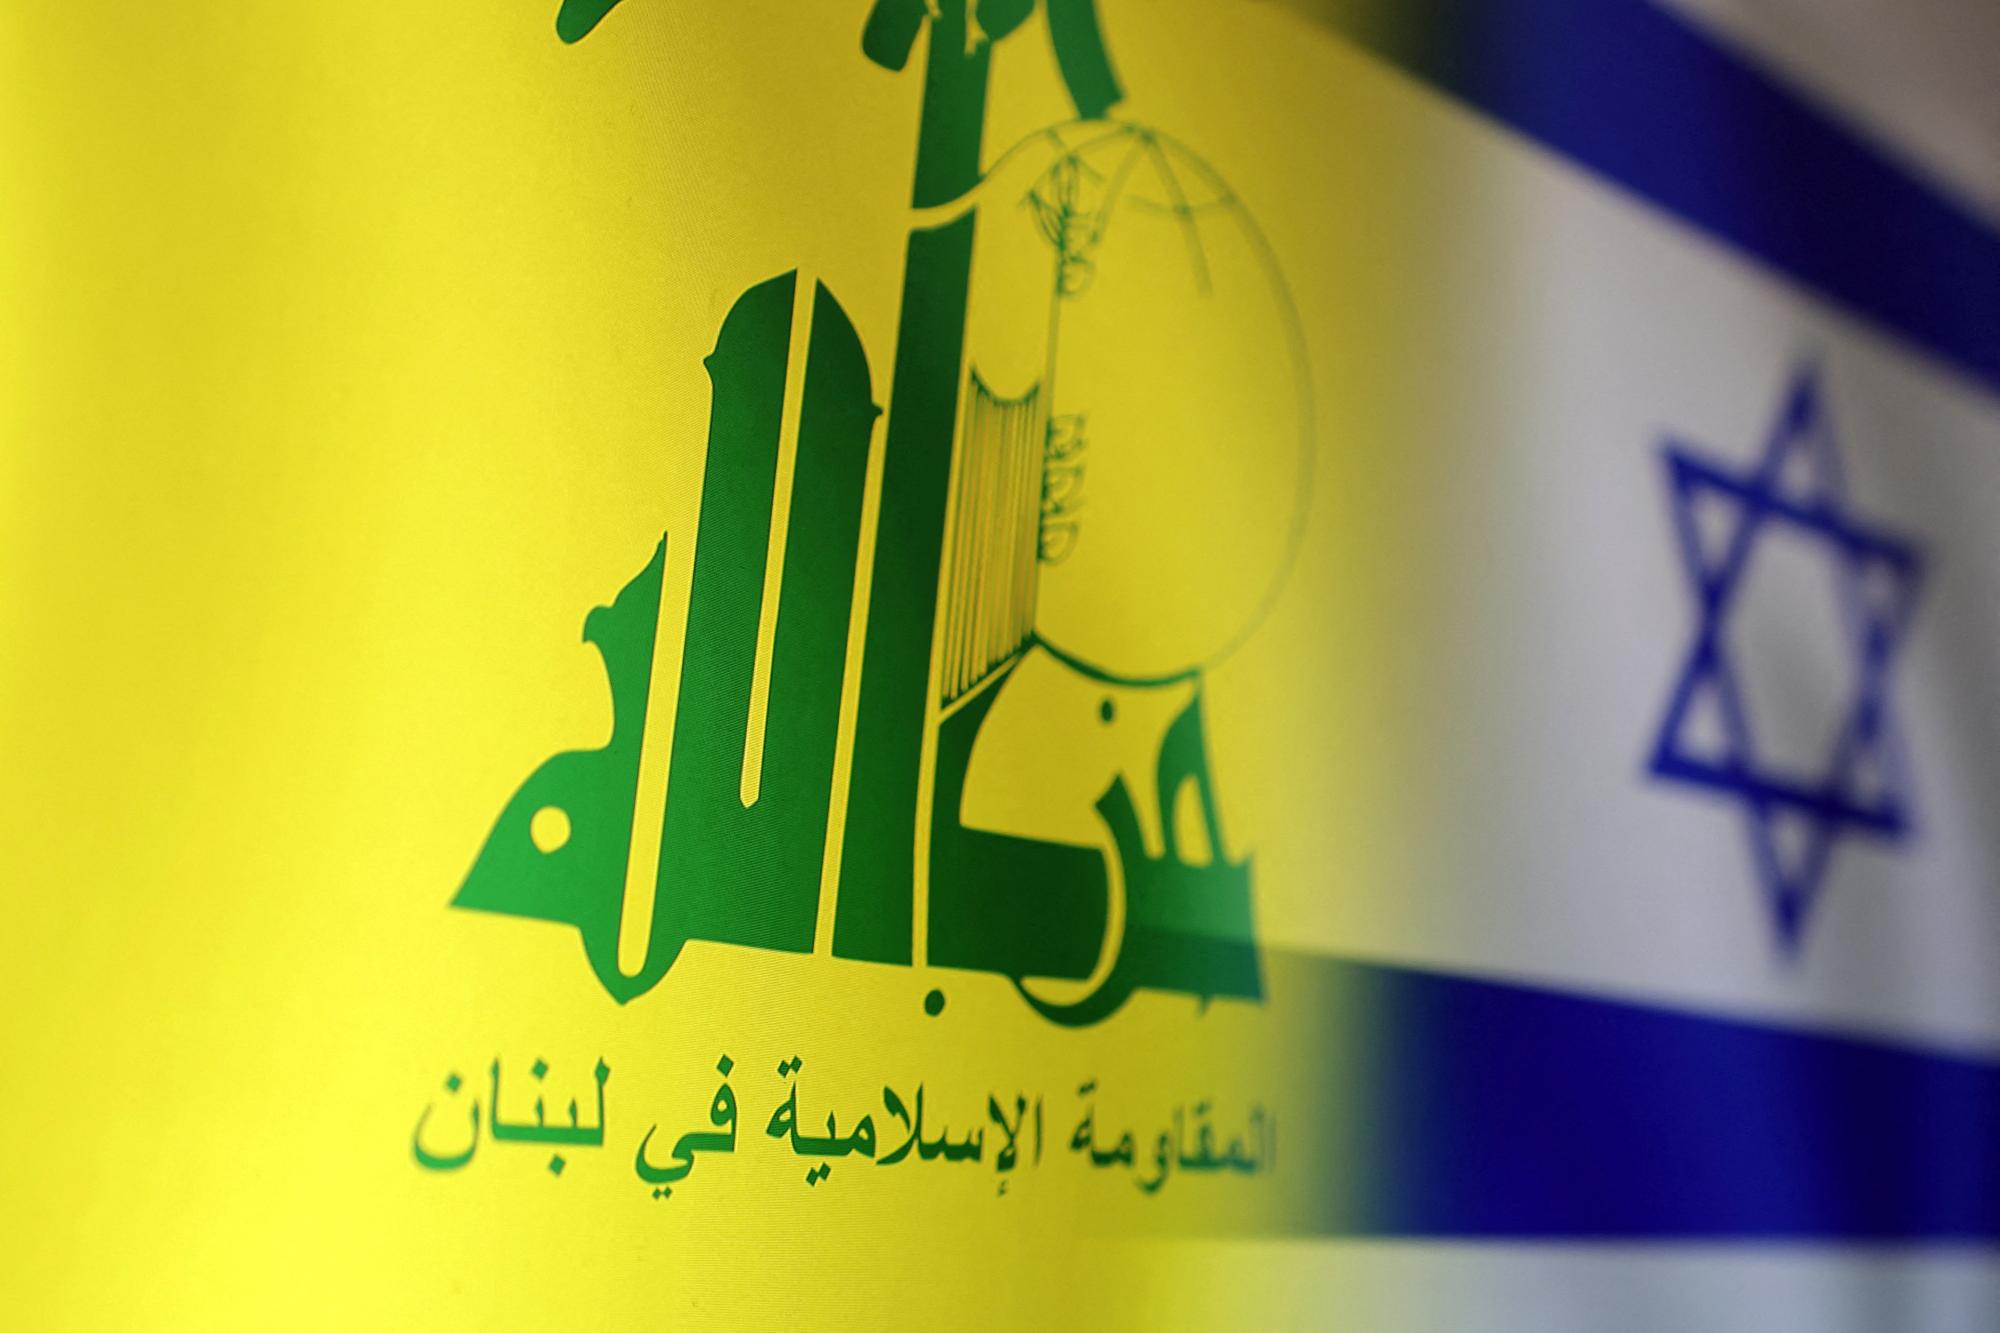 Izrael likivdálta a Hezbollah egyik magas rangú parancsnokát